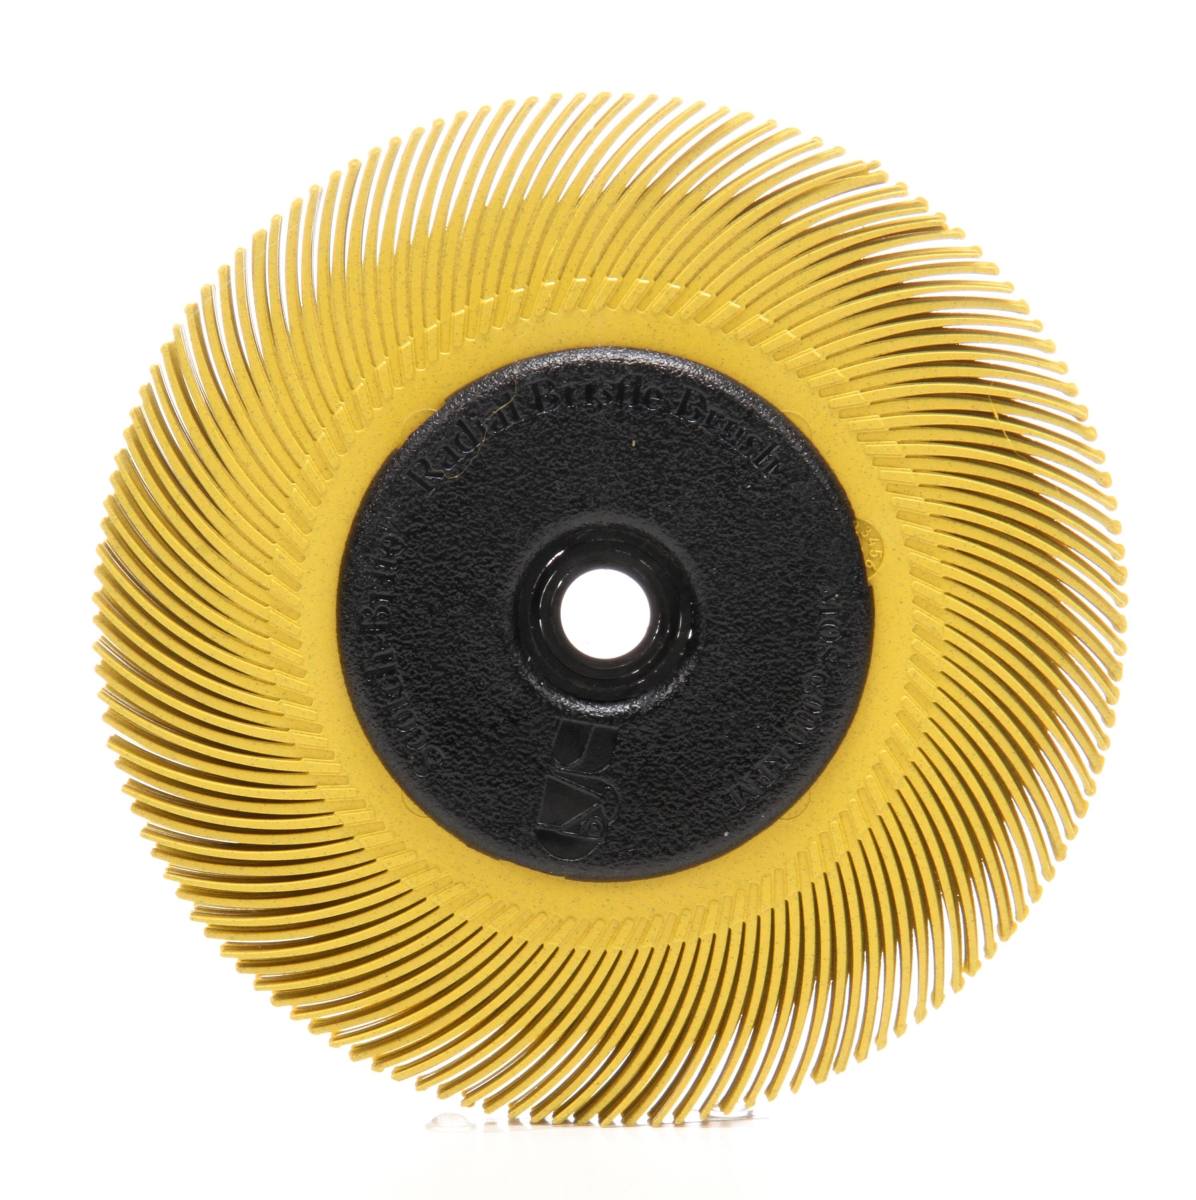 3M Scotch-Brite Radial Bristle Disc BB-ZB avec bride, jaune, 152,4 mm, P80, type C #33215